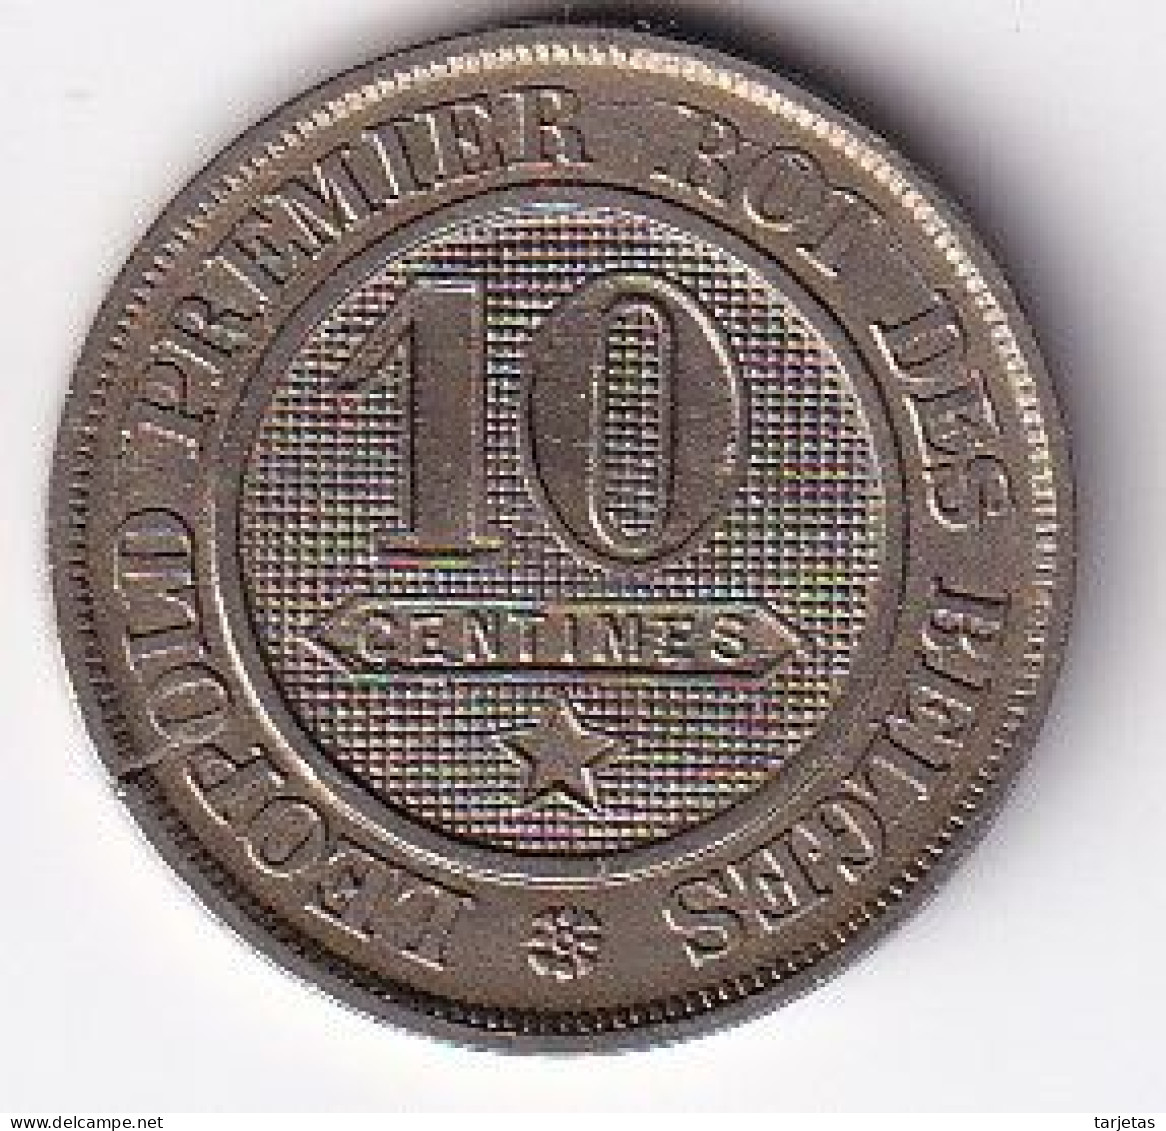 MONEDA DE BELGICA DE 10 CENTIMES DEL AÑO 1861  (COIN) - 10 Centimes